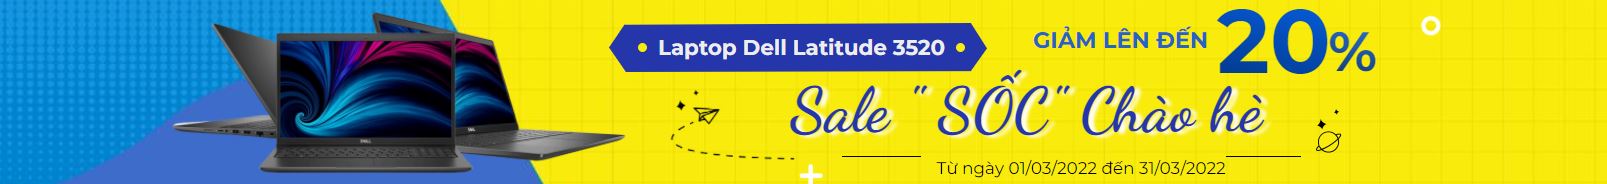 Dell latitude 3520